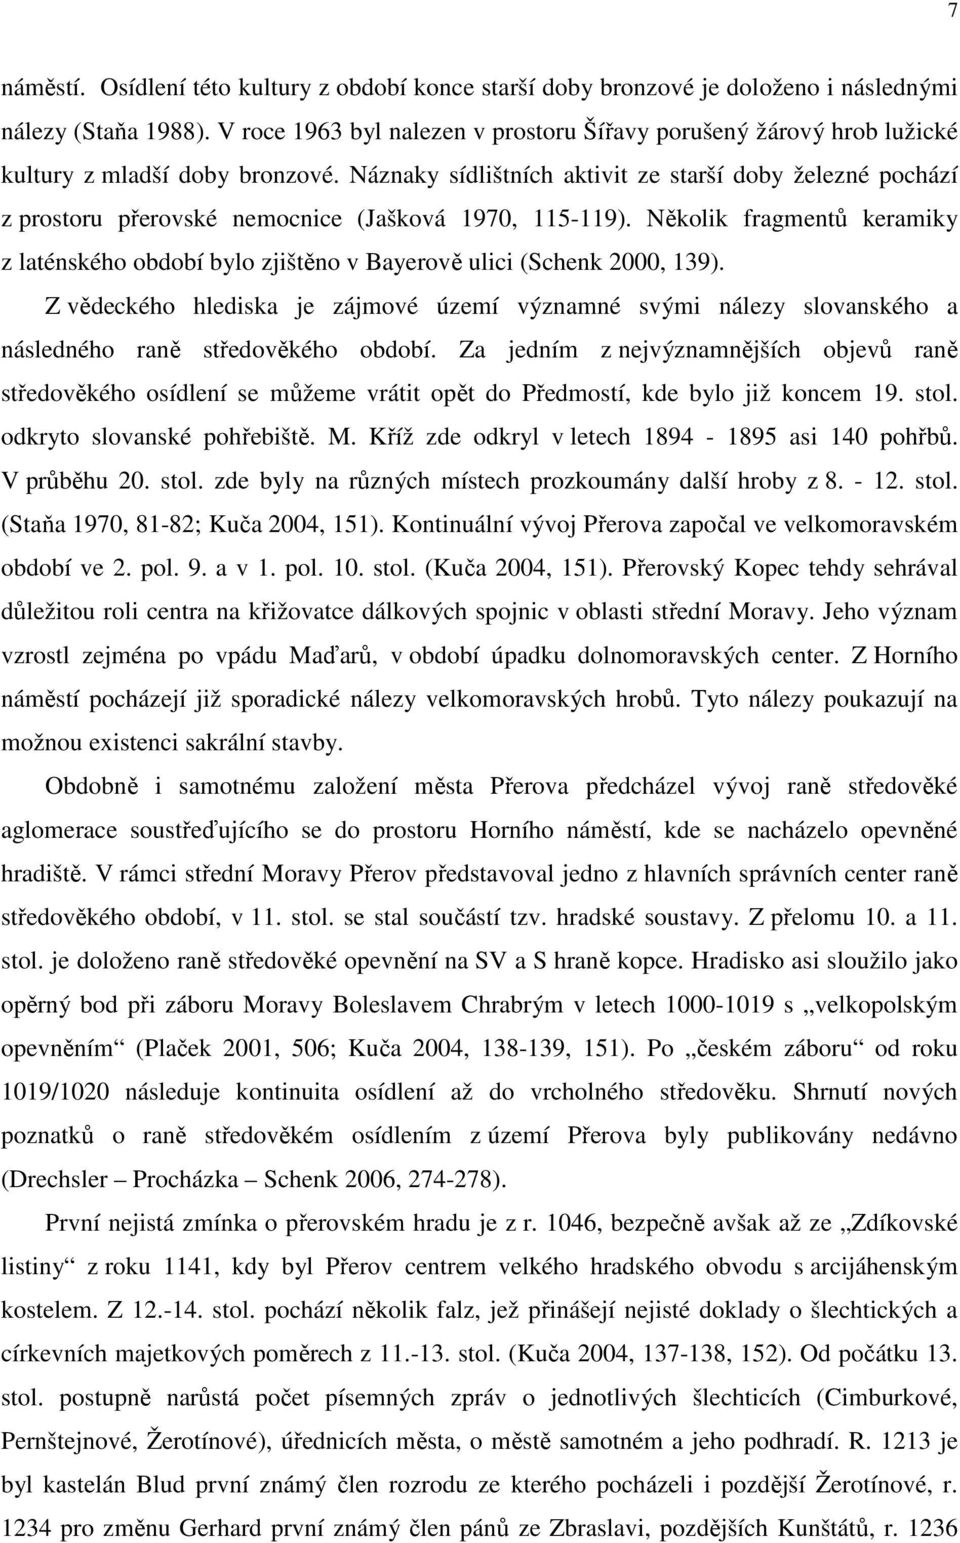 Náznaky sídlištních aktivit ze starší doby železné pochází z prostoru přerovské nemocnice (Jašková 1970, 115-119).